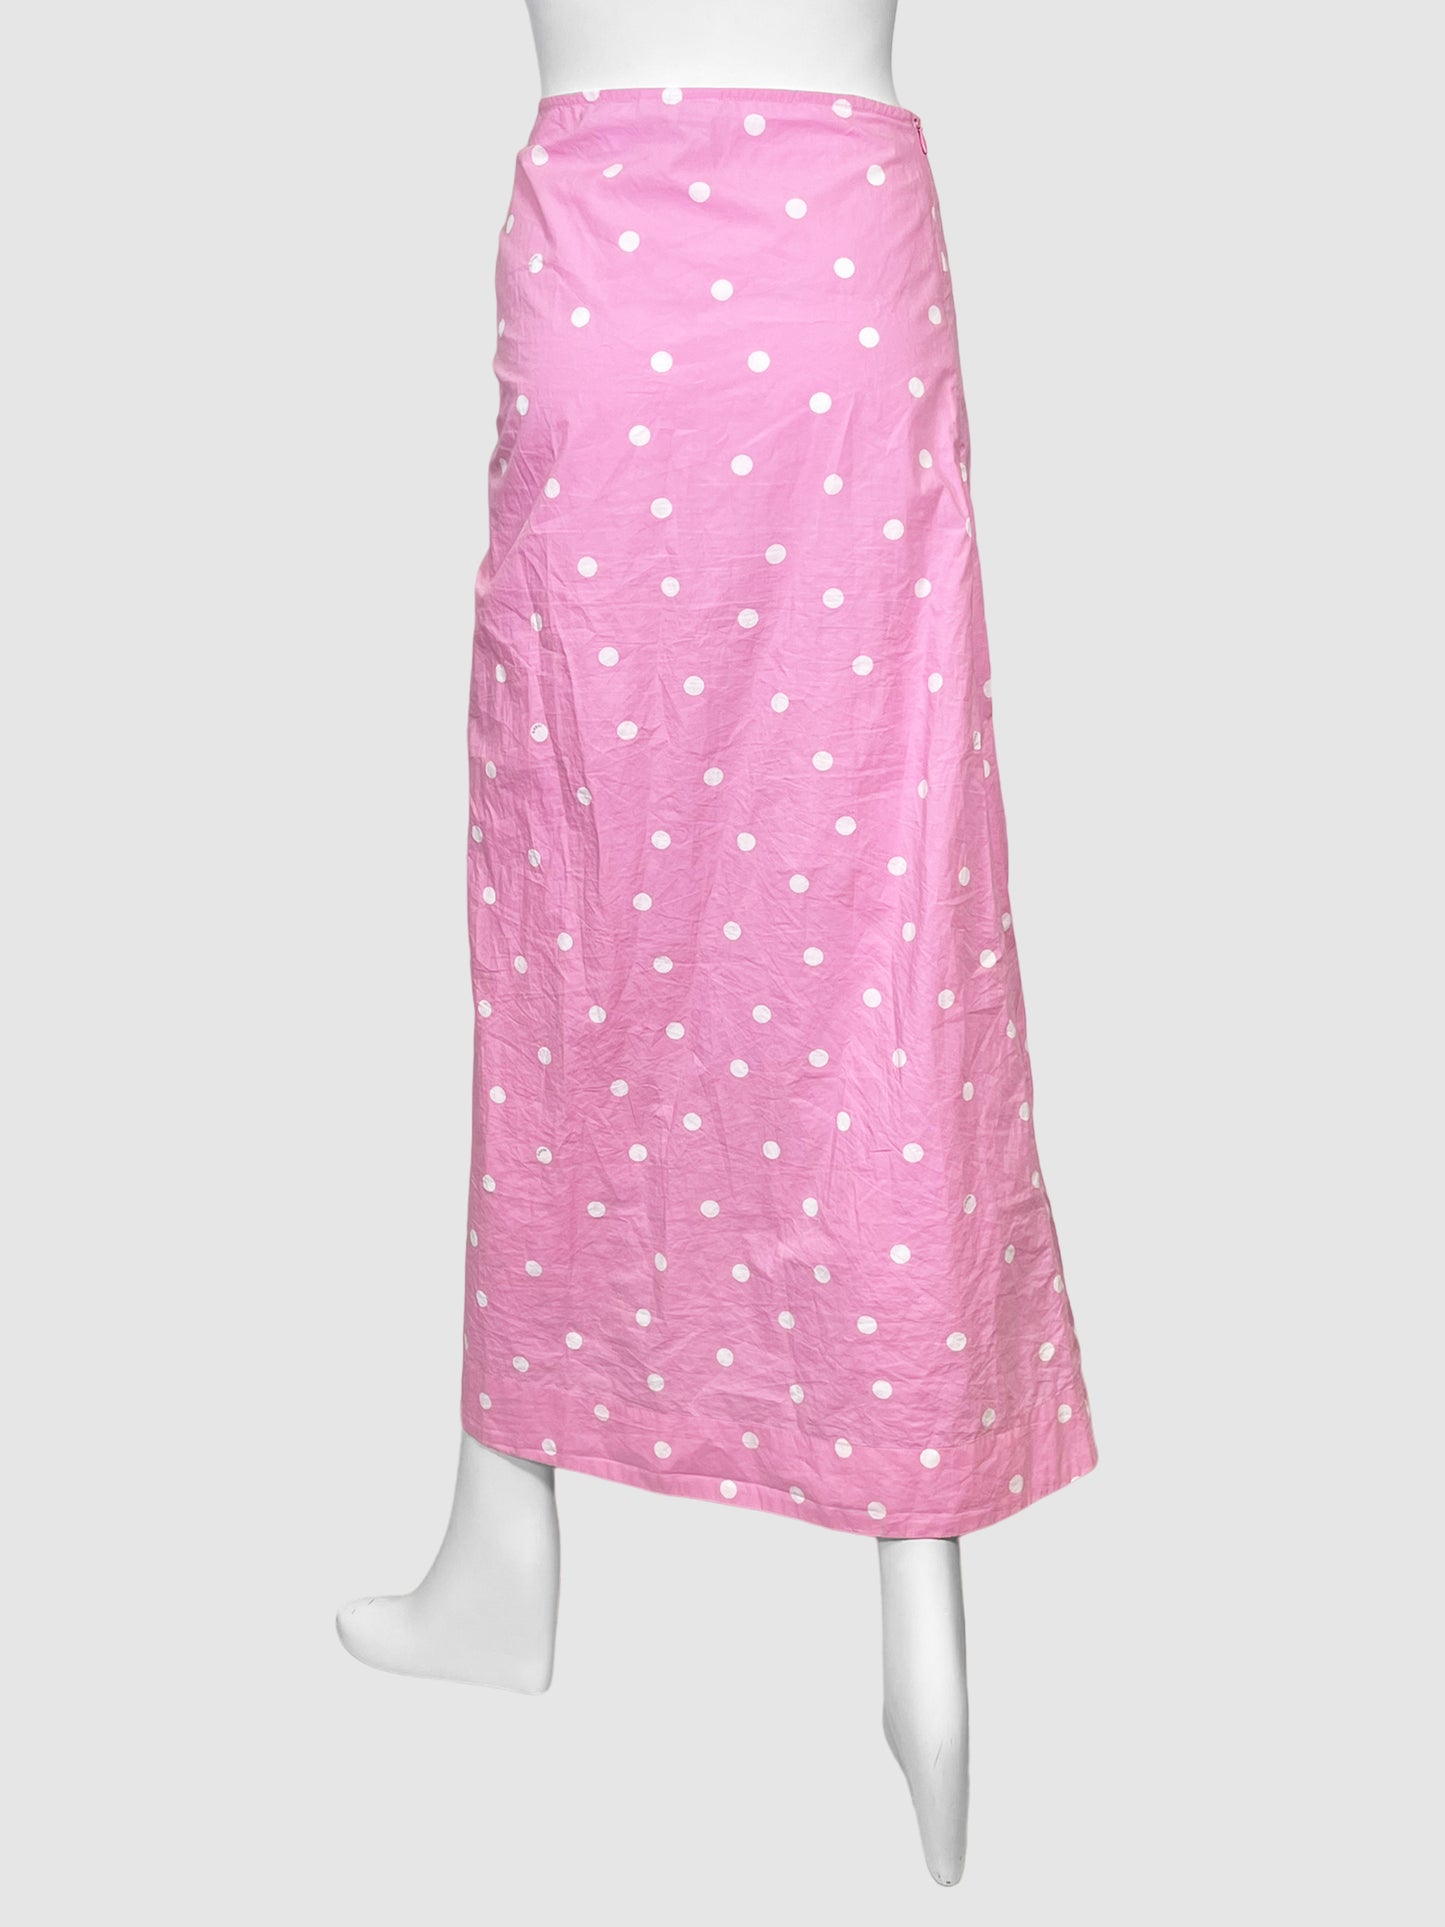 Ganni Polka Dot Maxi Skirt - Size 34